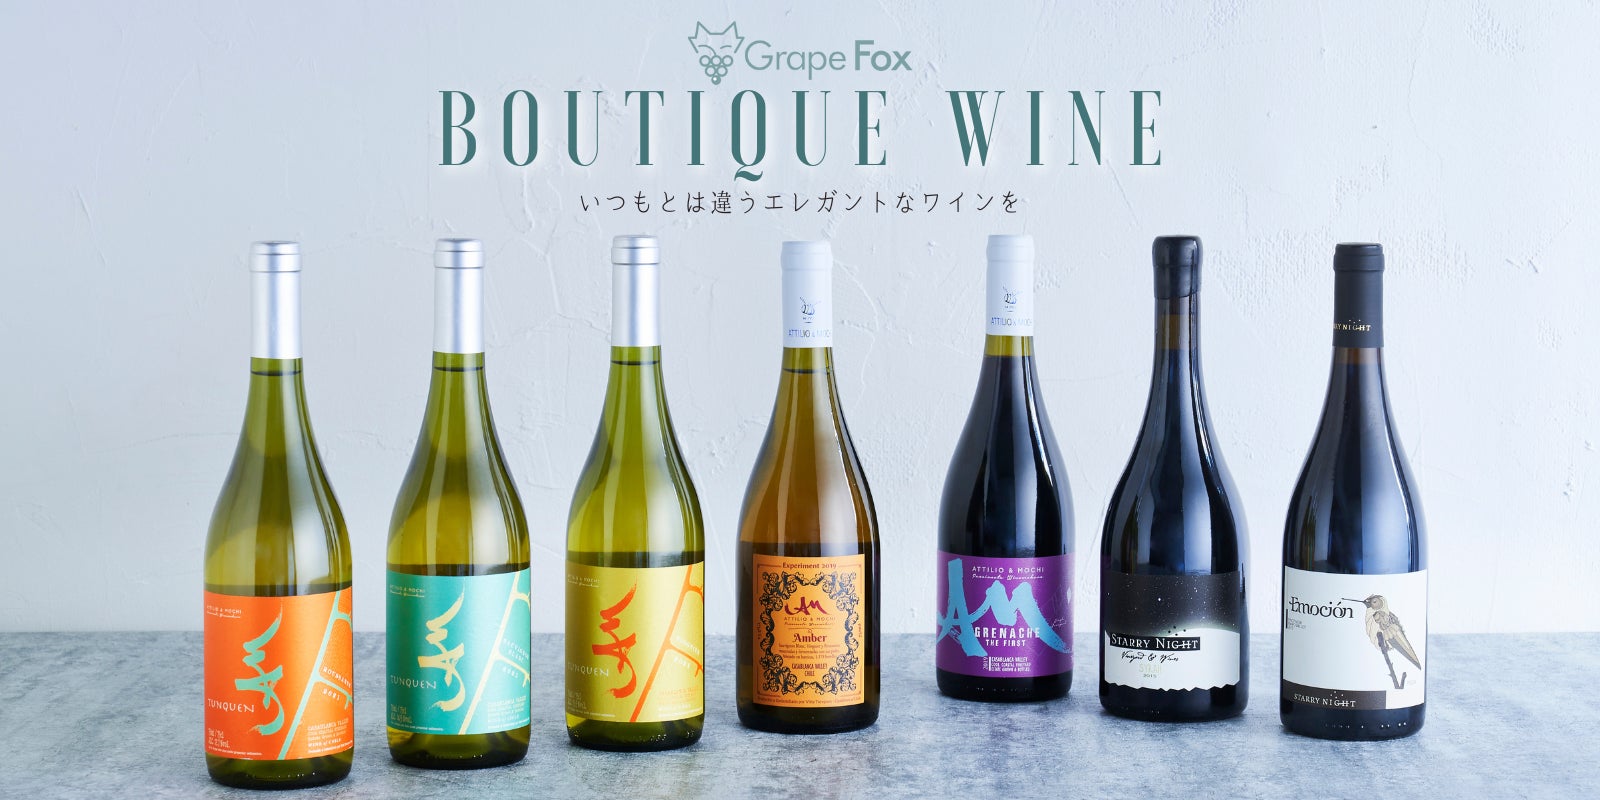 生産数10,000本以下の少量生産ワインを販売するGrapeFox、ブドウの楽園チリから忘れられたブドウ『パイス』のブレンドワインを日本初輸入、「Makuake」にて先行・限定販売プロジェクトを開始のサブ画像7